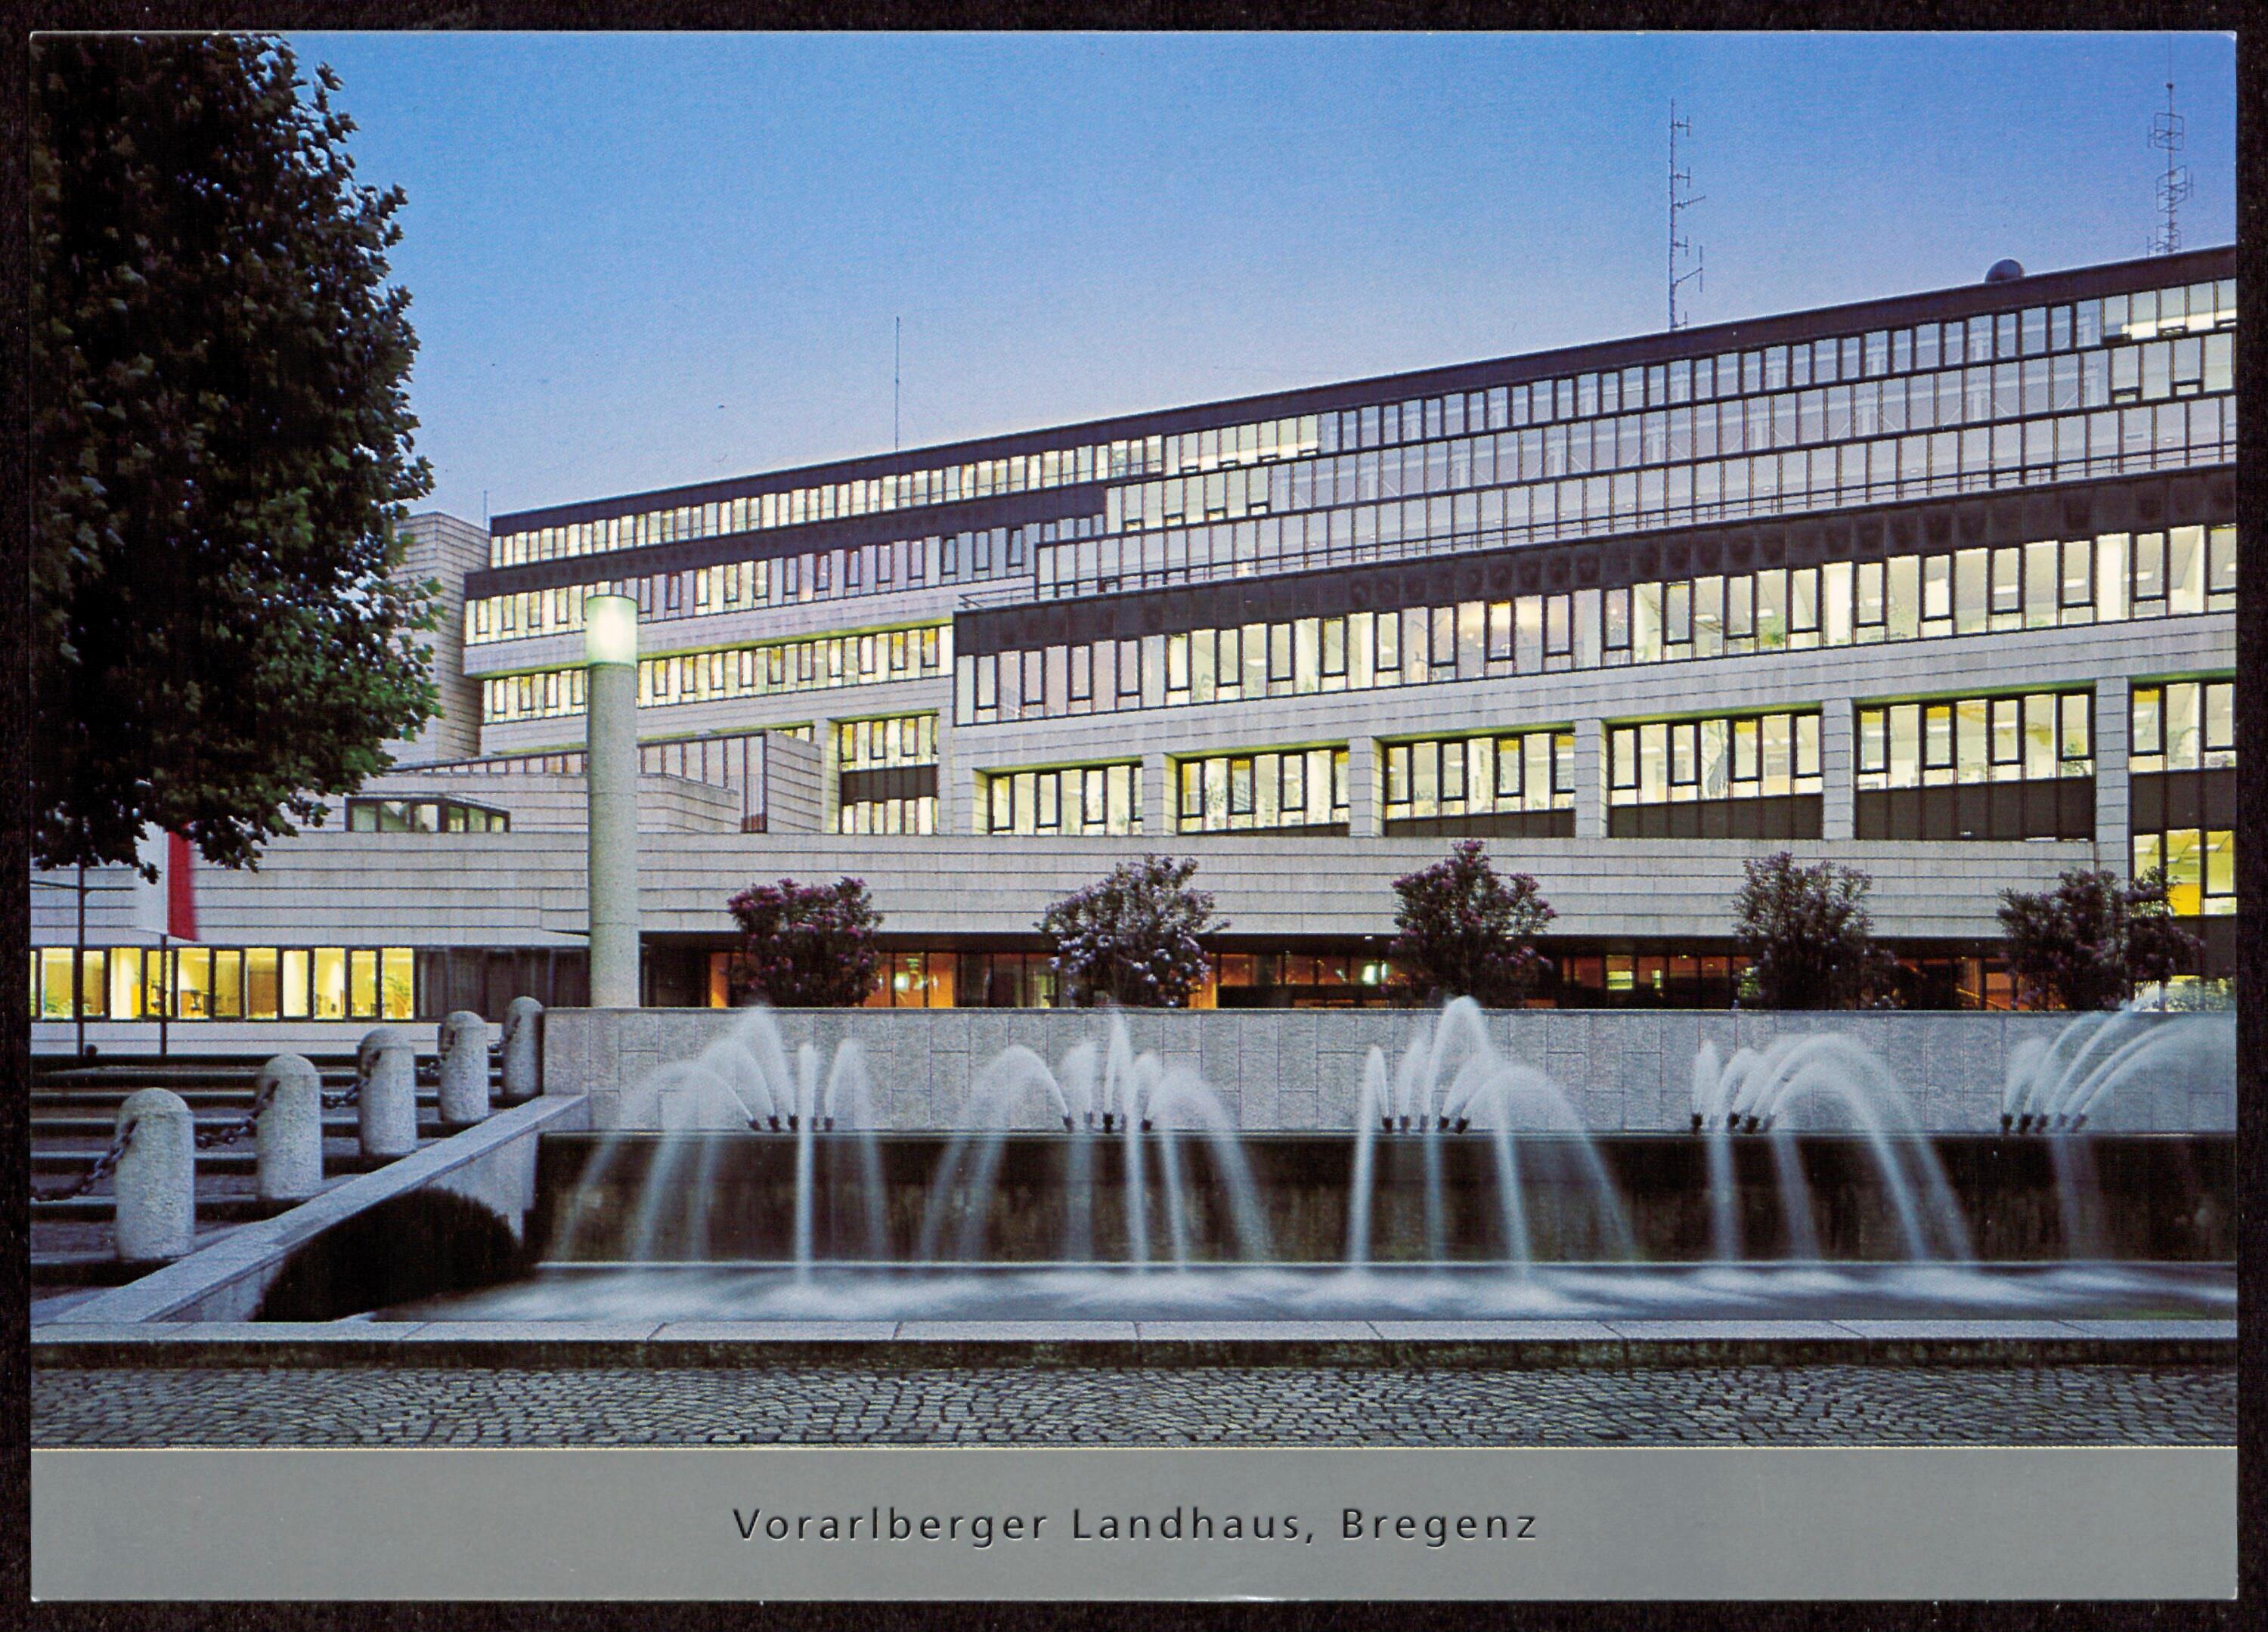 Vorarlberger Landhaus, Bregenz></div>


    <hr>
    <div class=